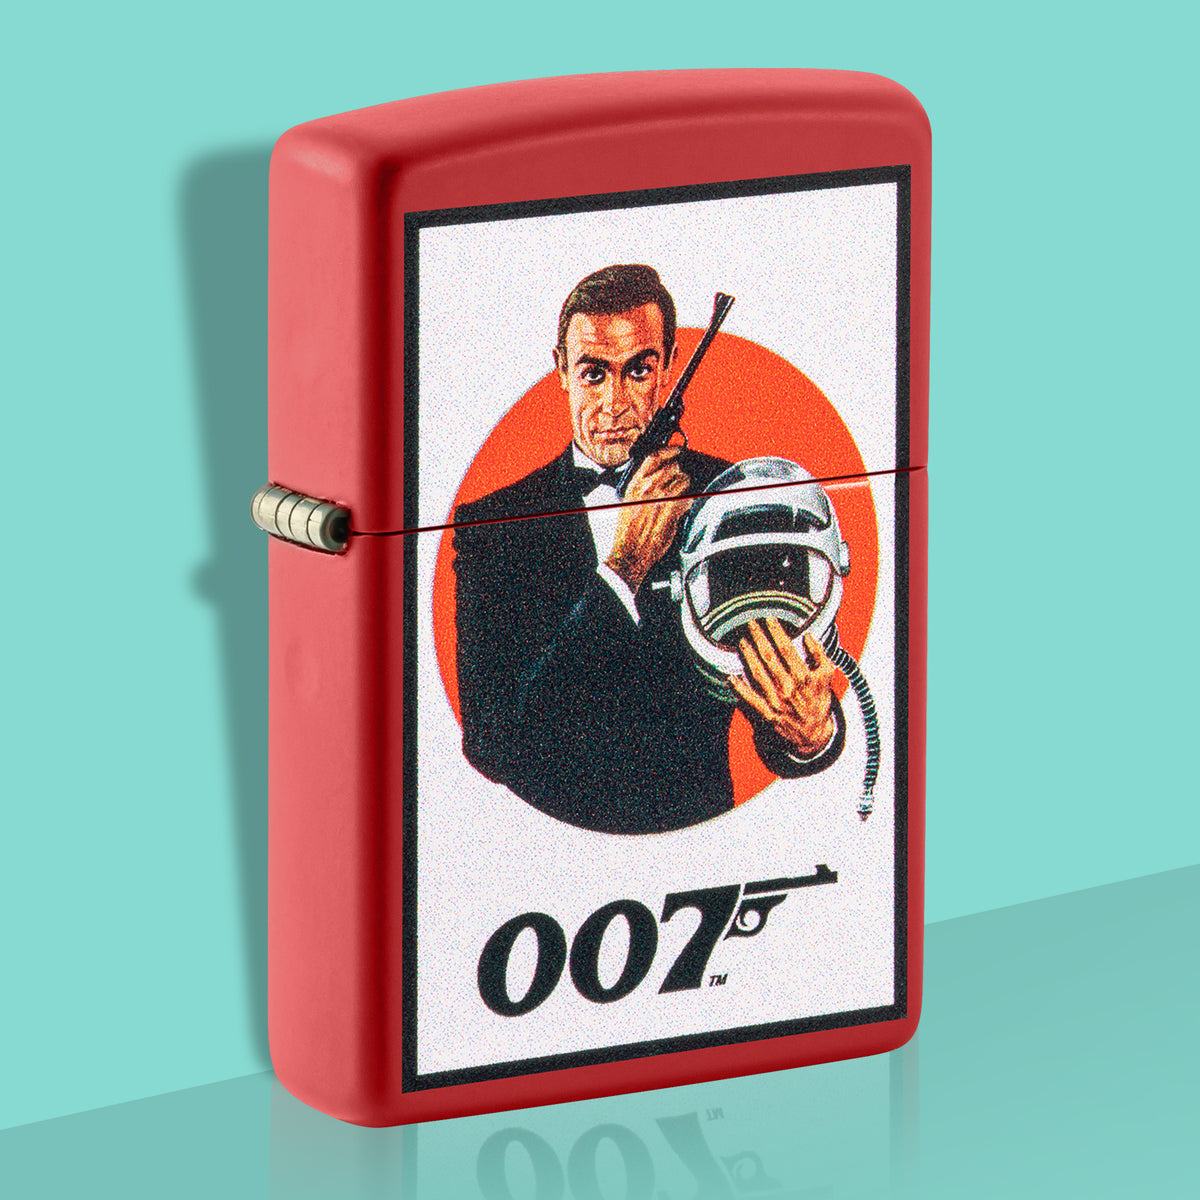 James Bond Zippo Feuerzeug - Man lebt nur zweimal, rote Edition